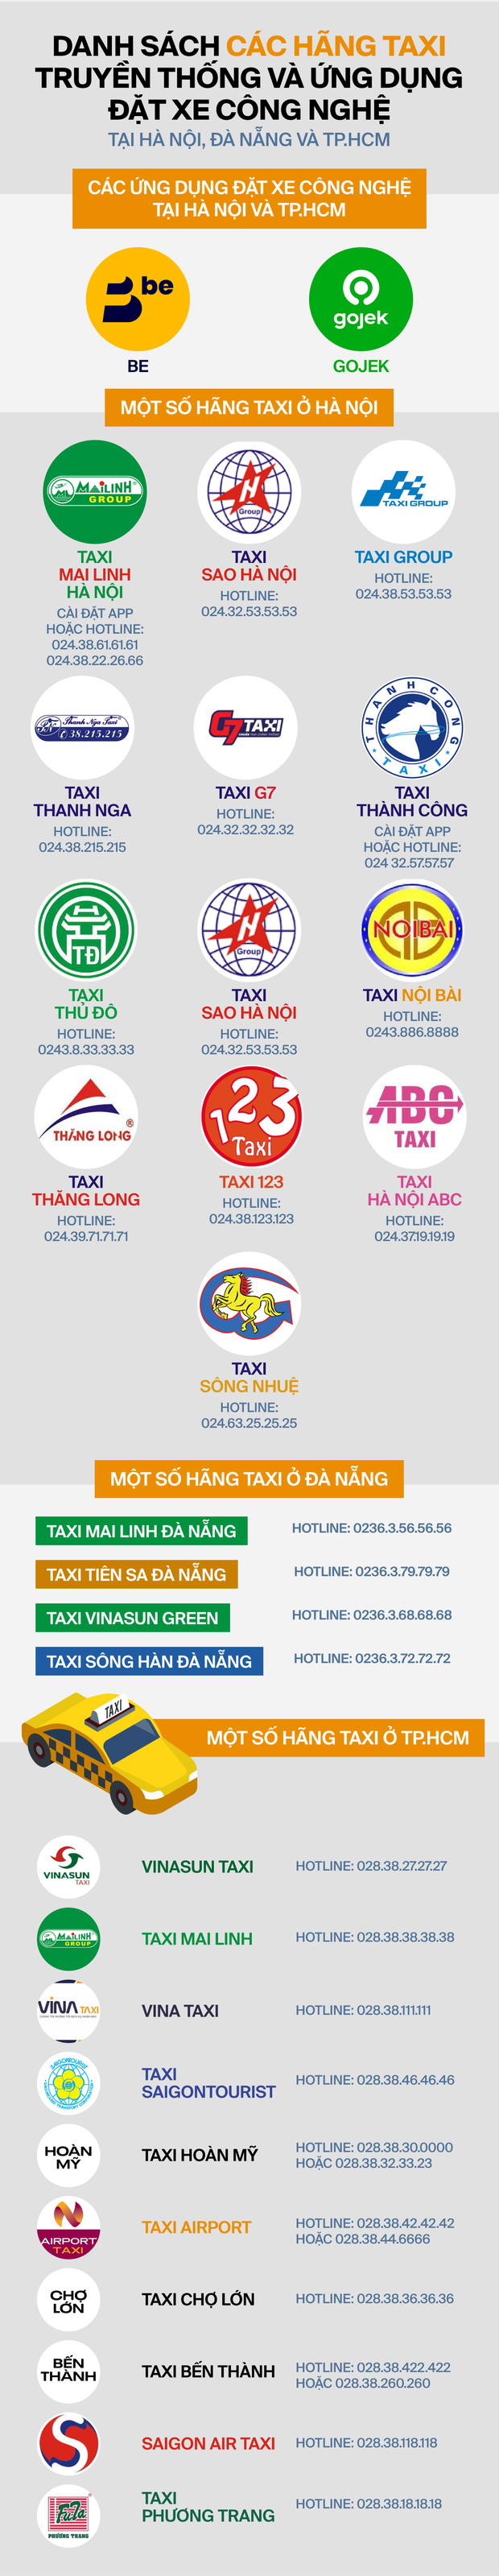 Chán Grab vì cước phí đắt đỏ, hành khách quay xe gọi taxi truyền thống và loạt app đặt xe khác - Ảnh 4.